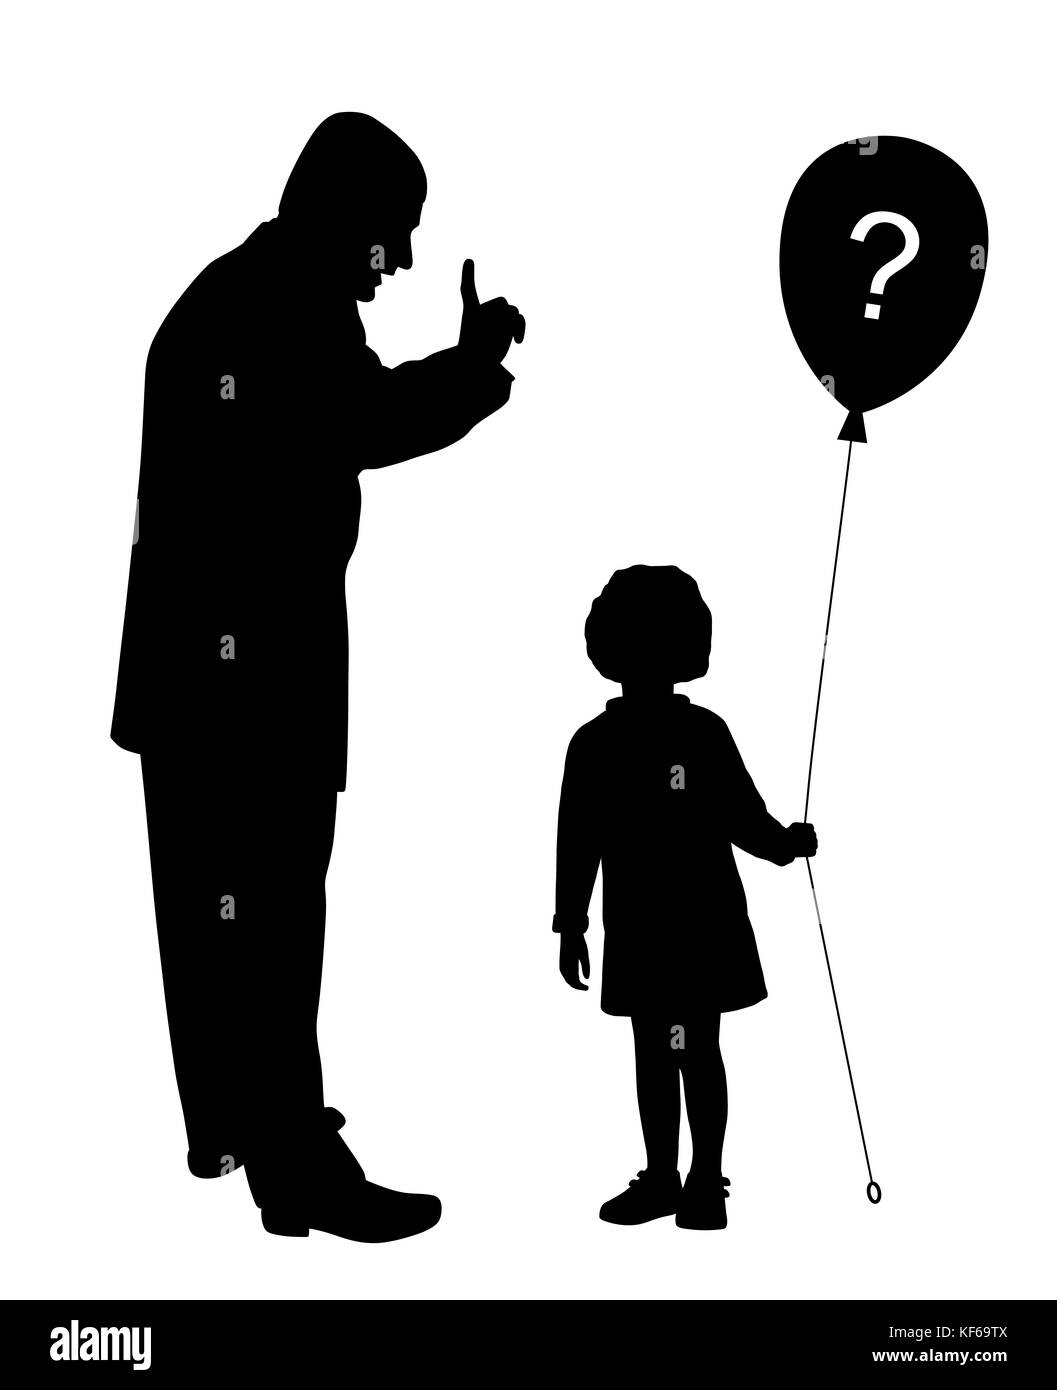 Vater schimpft. Kind nicht verstehen und hält Ballon mit Fragezeichen. Stockfoto